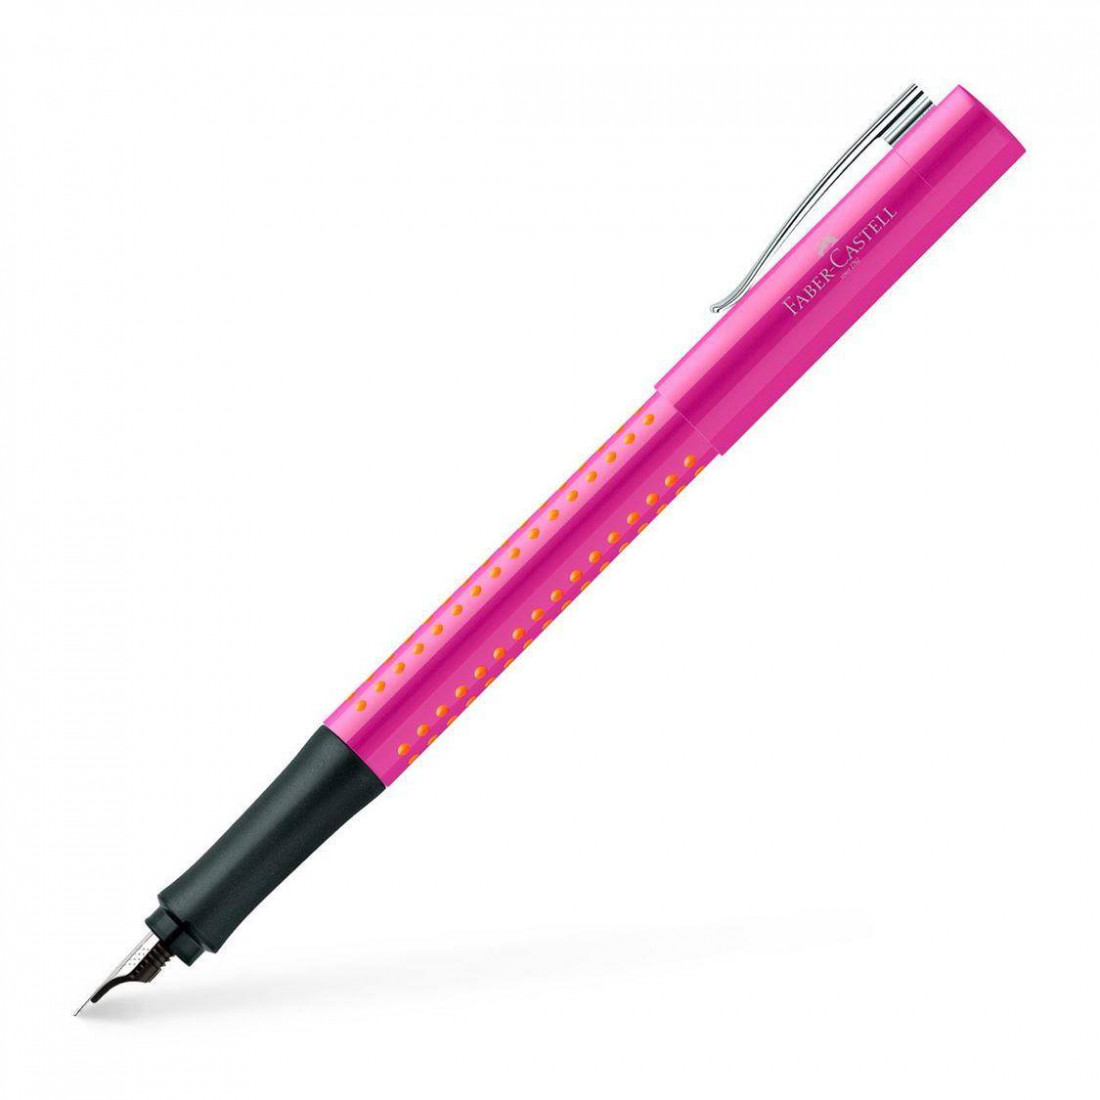 Faber Castell Fountain pen Grip 2010 pink